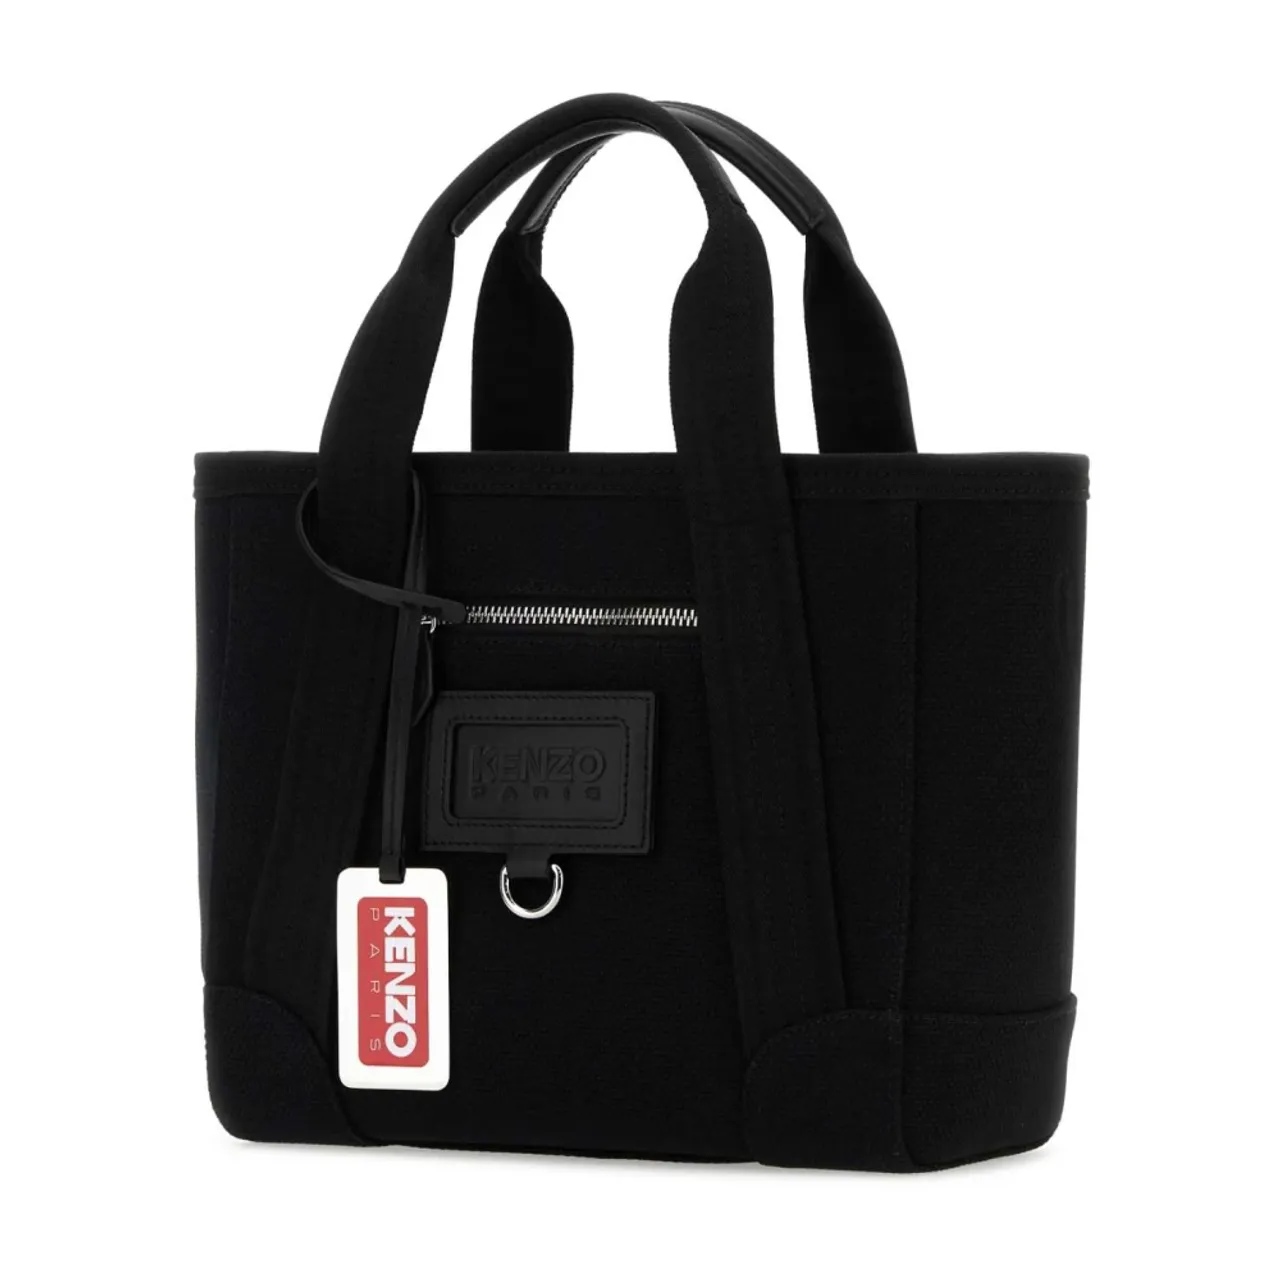 Stilvolle Borsa Tasche,Logo Baumwoll-Schultertasche mit Reißverschluss Kenzo